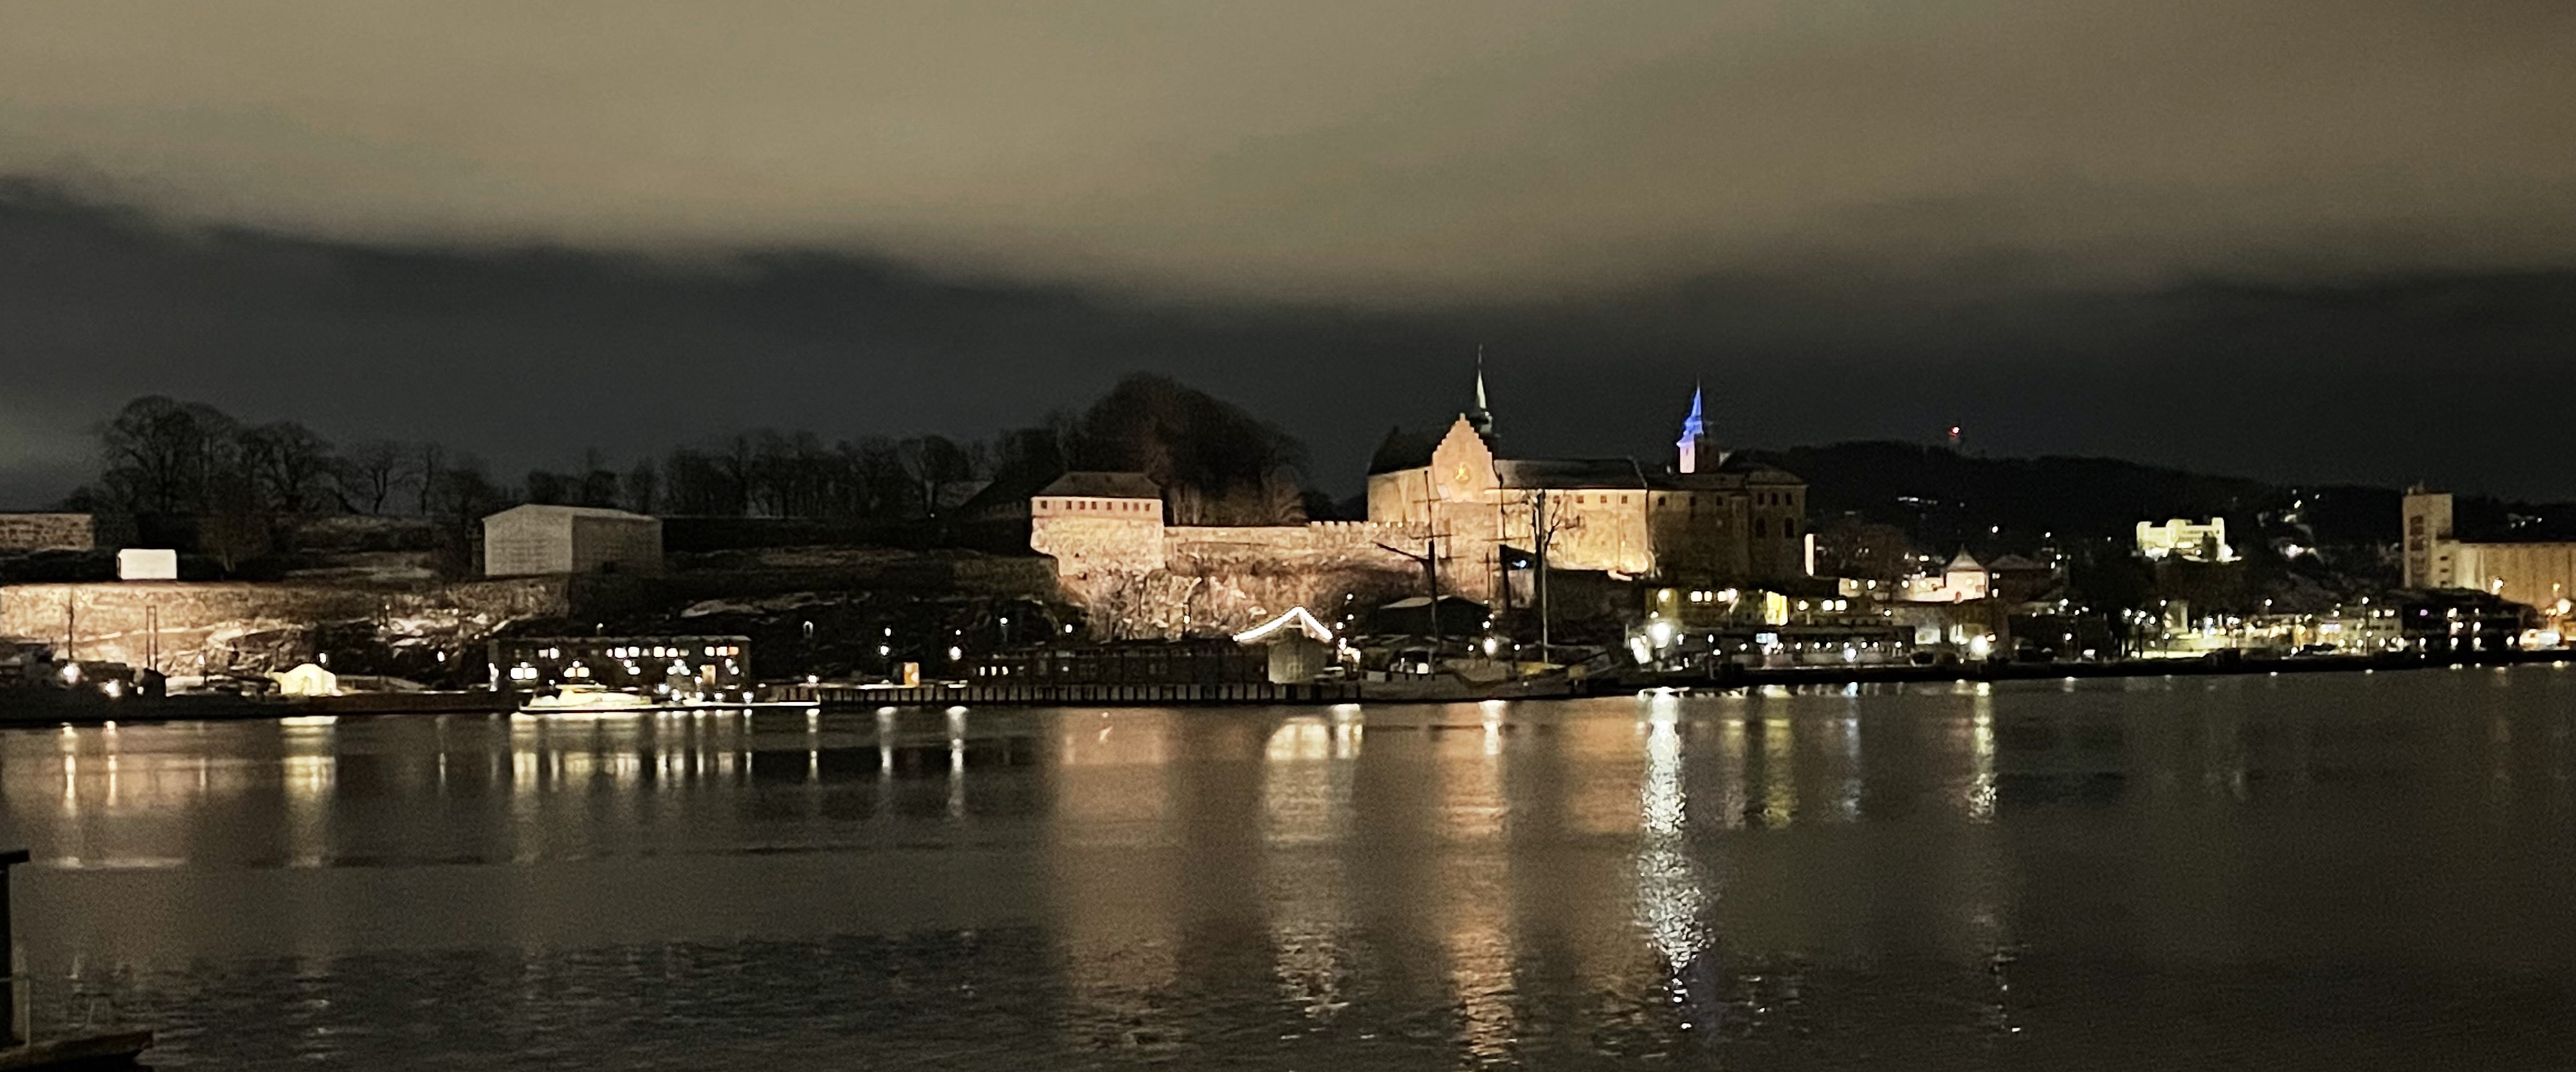 Akershus Festning at night